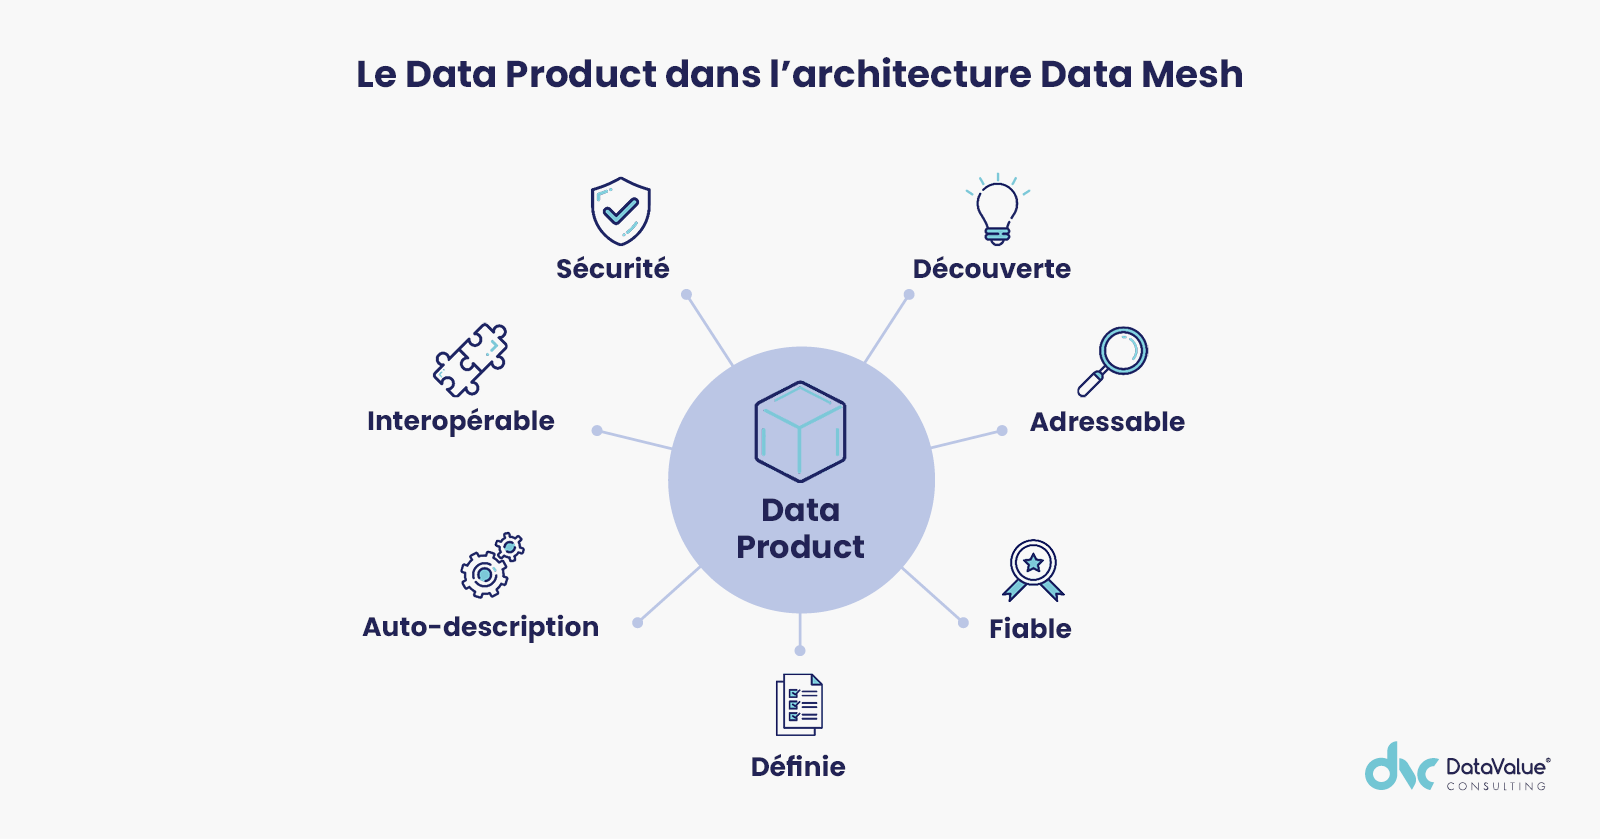 Le Data Product dans l'architecture Data Mesh